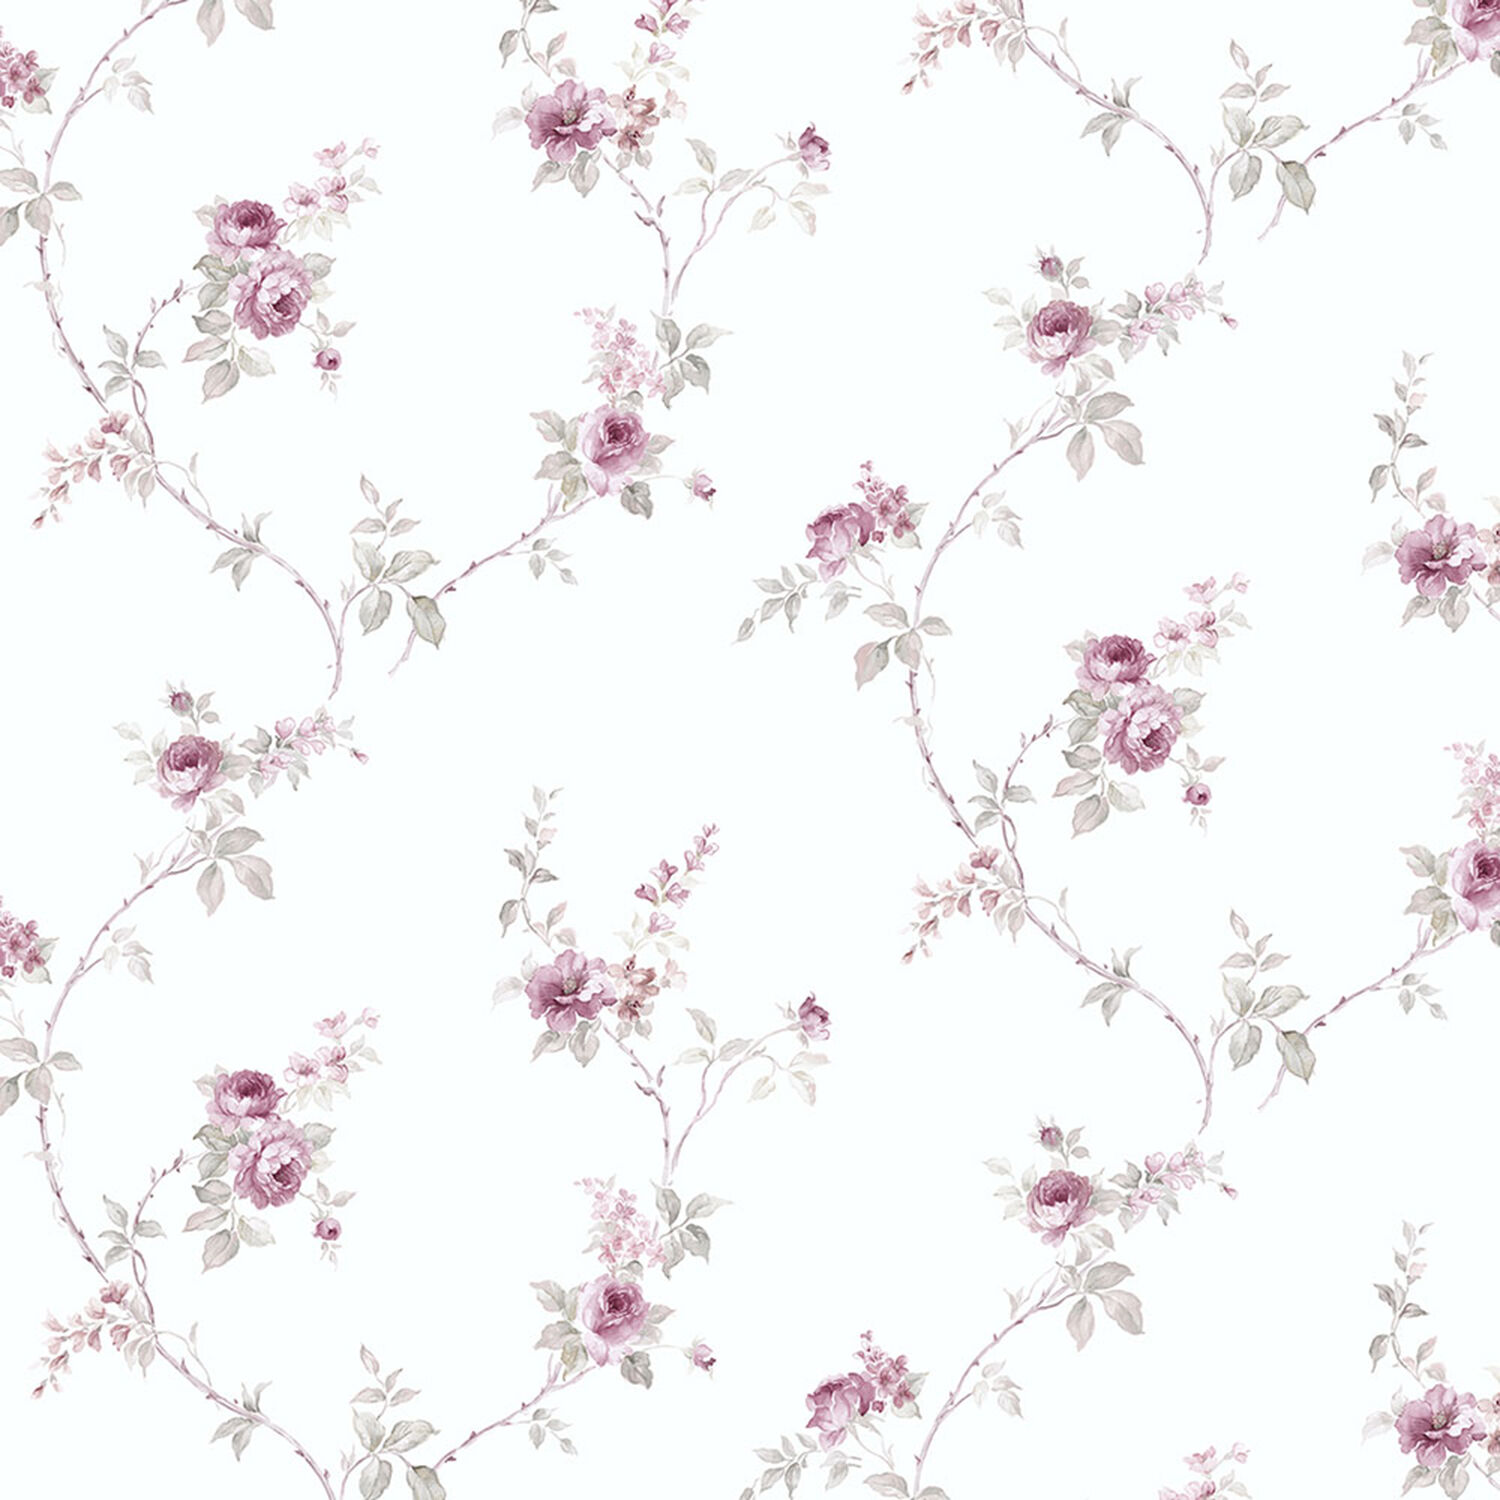 White & Pink Flowers Wallpaper Mural | Ever Wallpaper UK